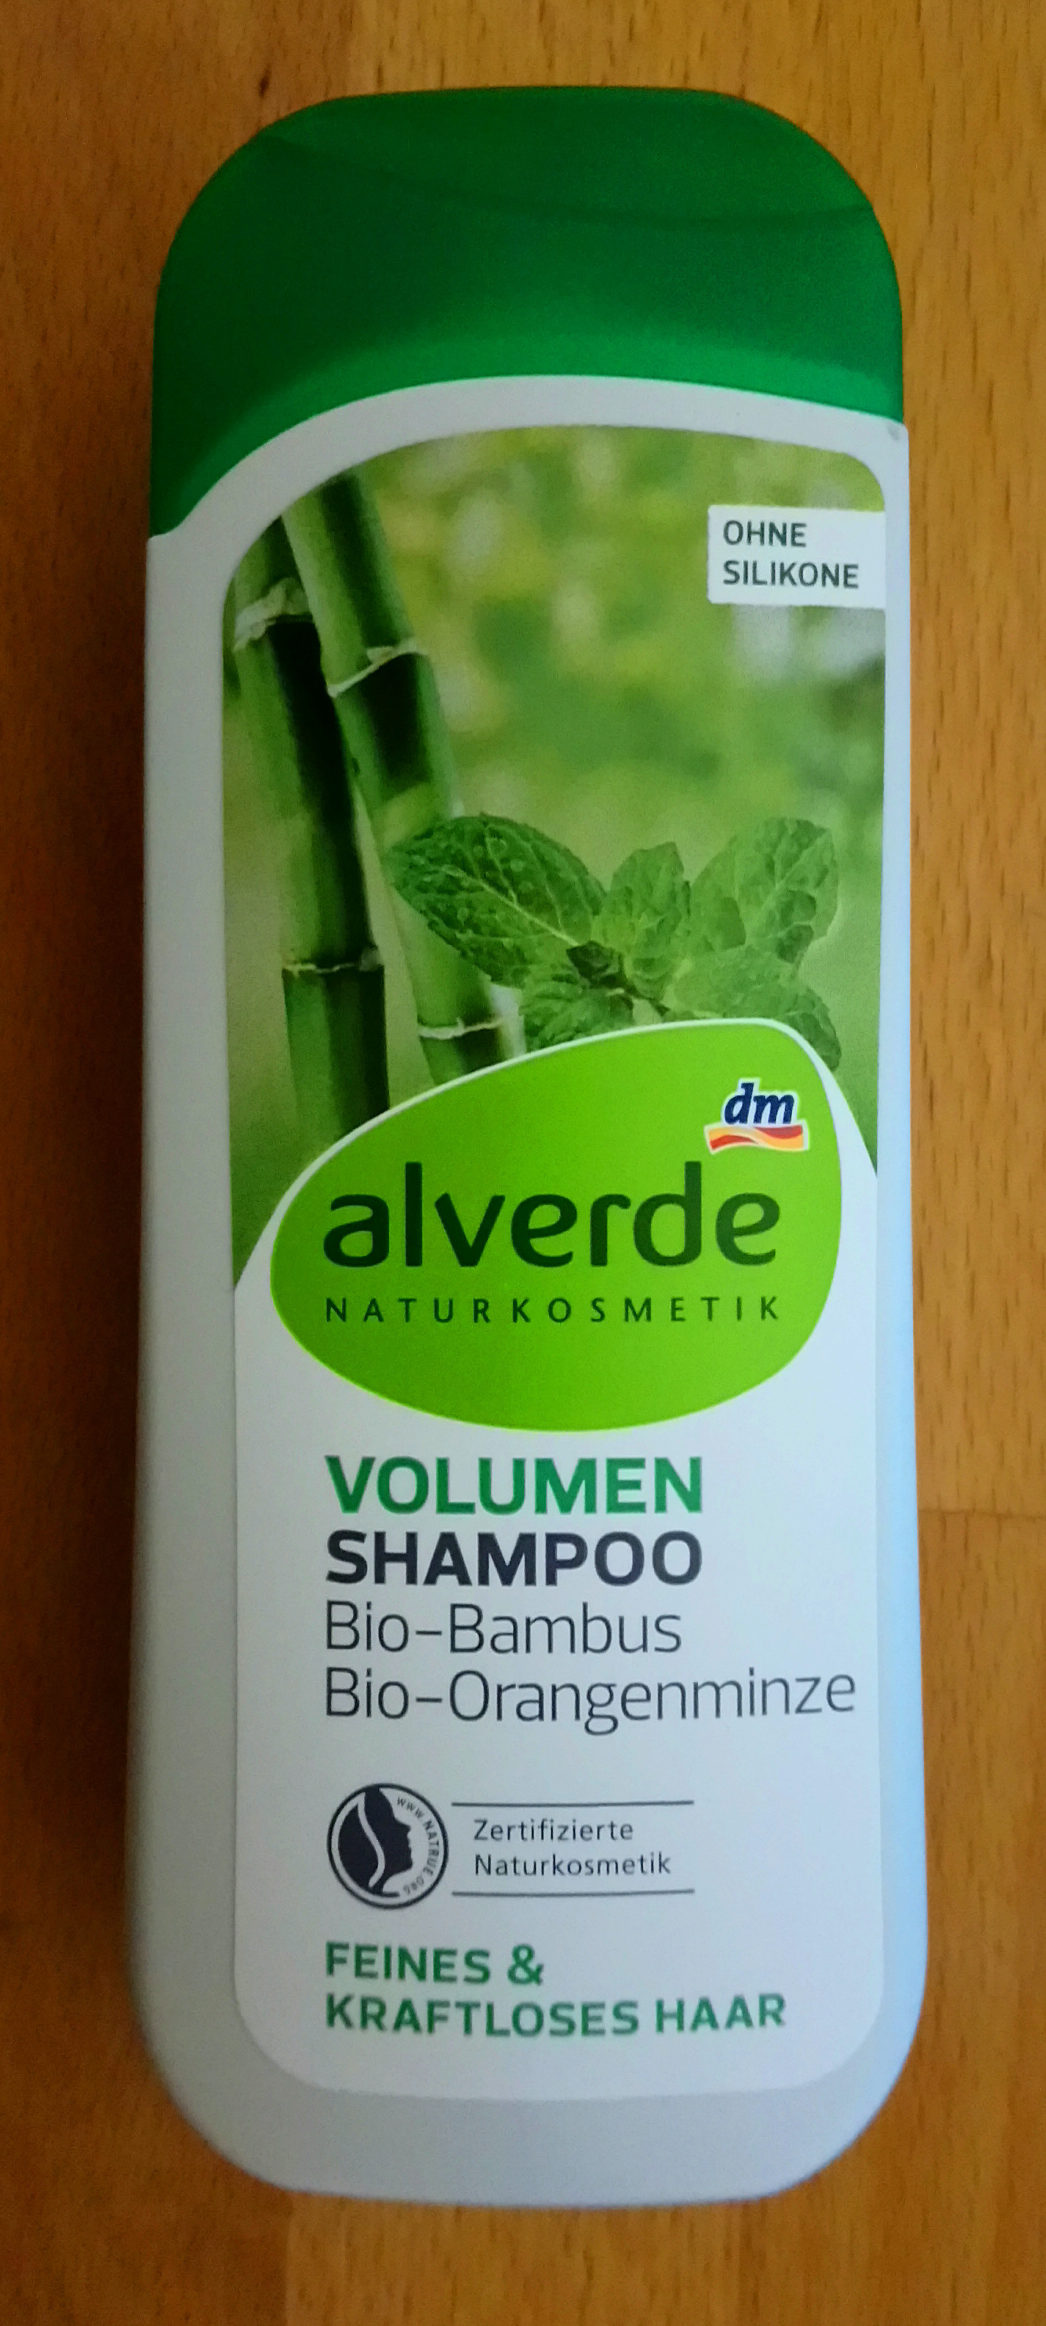 Volumen Shampoo Bio-Bambus Bio-Orangenminze - Product - de